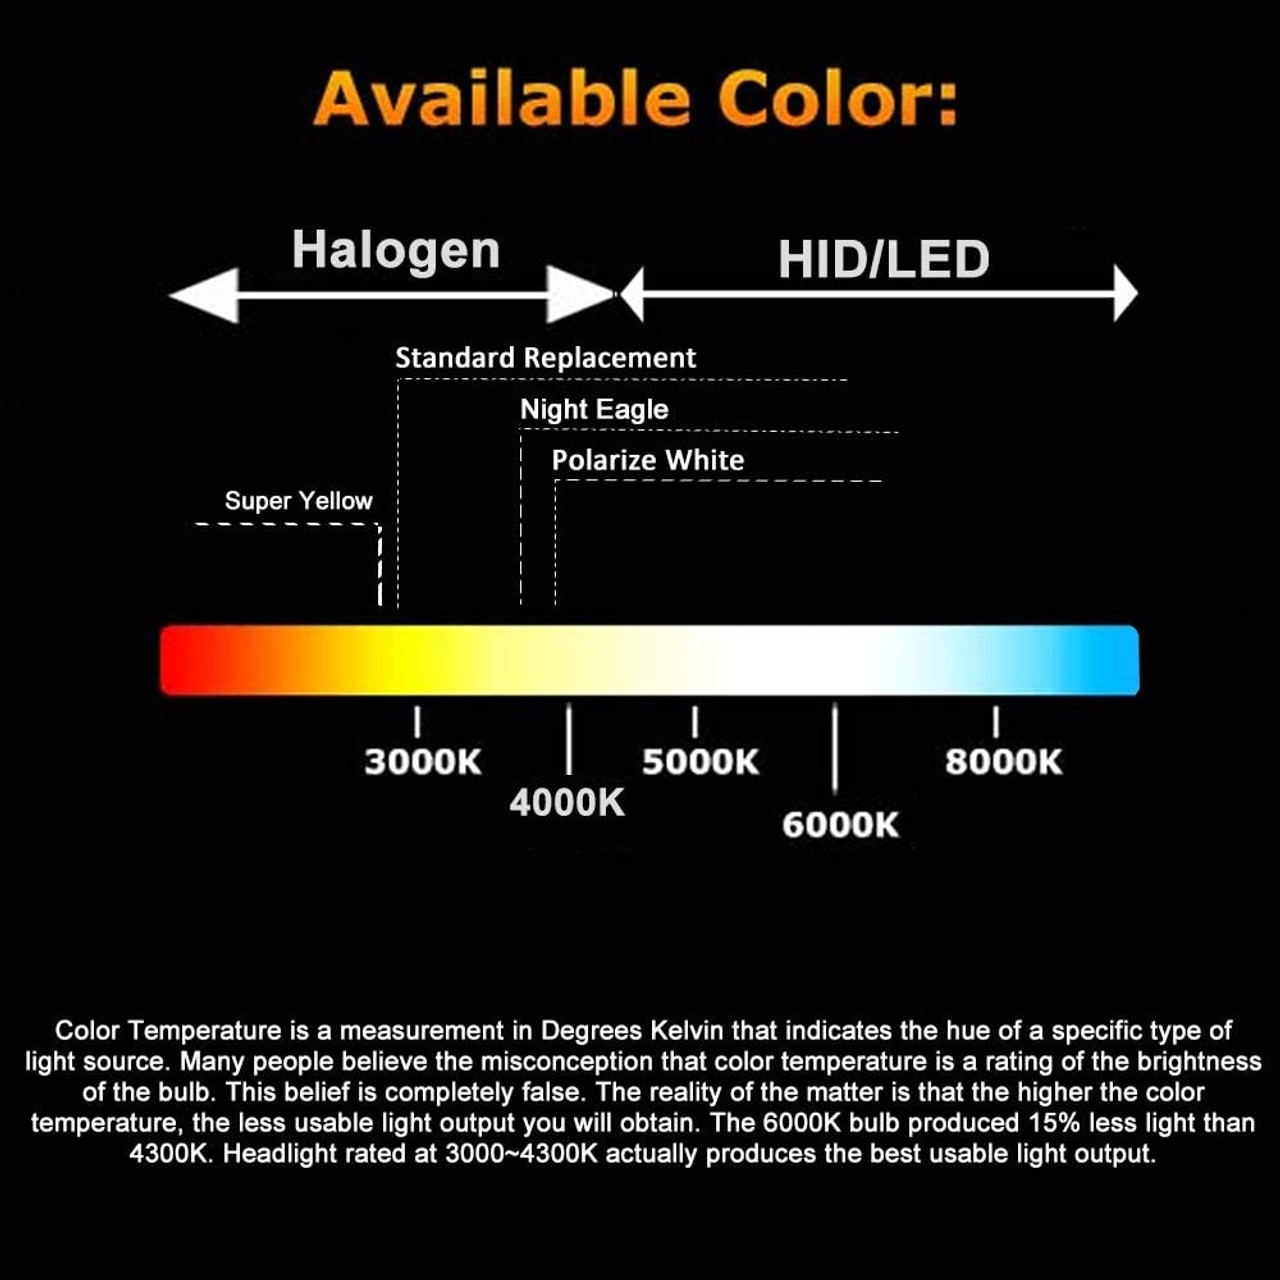 H7 Halogen Headlight Bulb 12V 55w White 5000K Fog Light Bulbs 12972 64210  Super Bright Headlamp